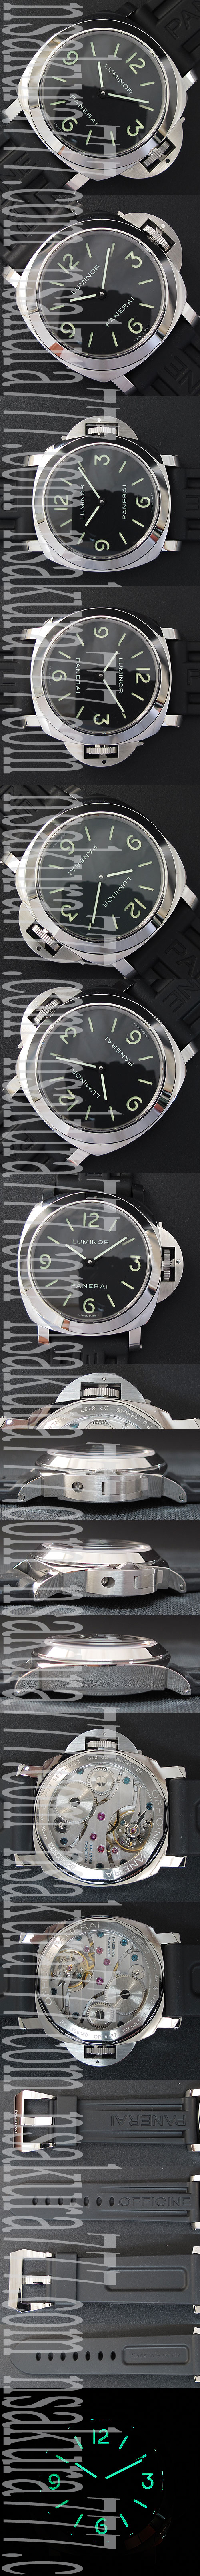 出来栄えの良いPANERAI ルミノール マリーナ PAM000 コピー時計 Asian Unitas 6497搭載 手巻き ラバーベルト